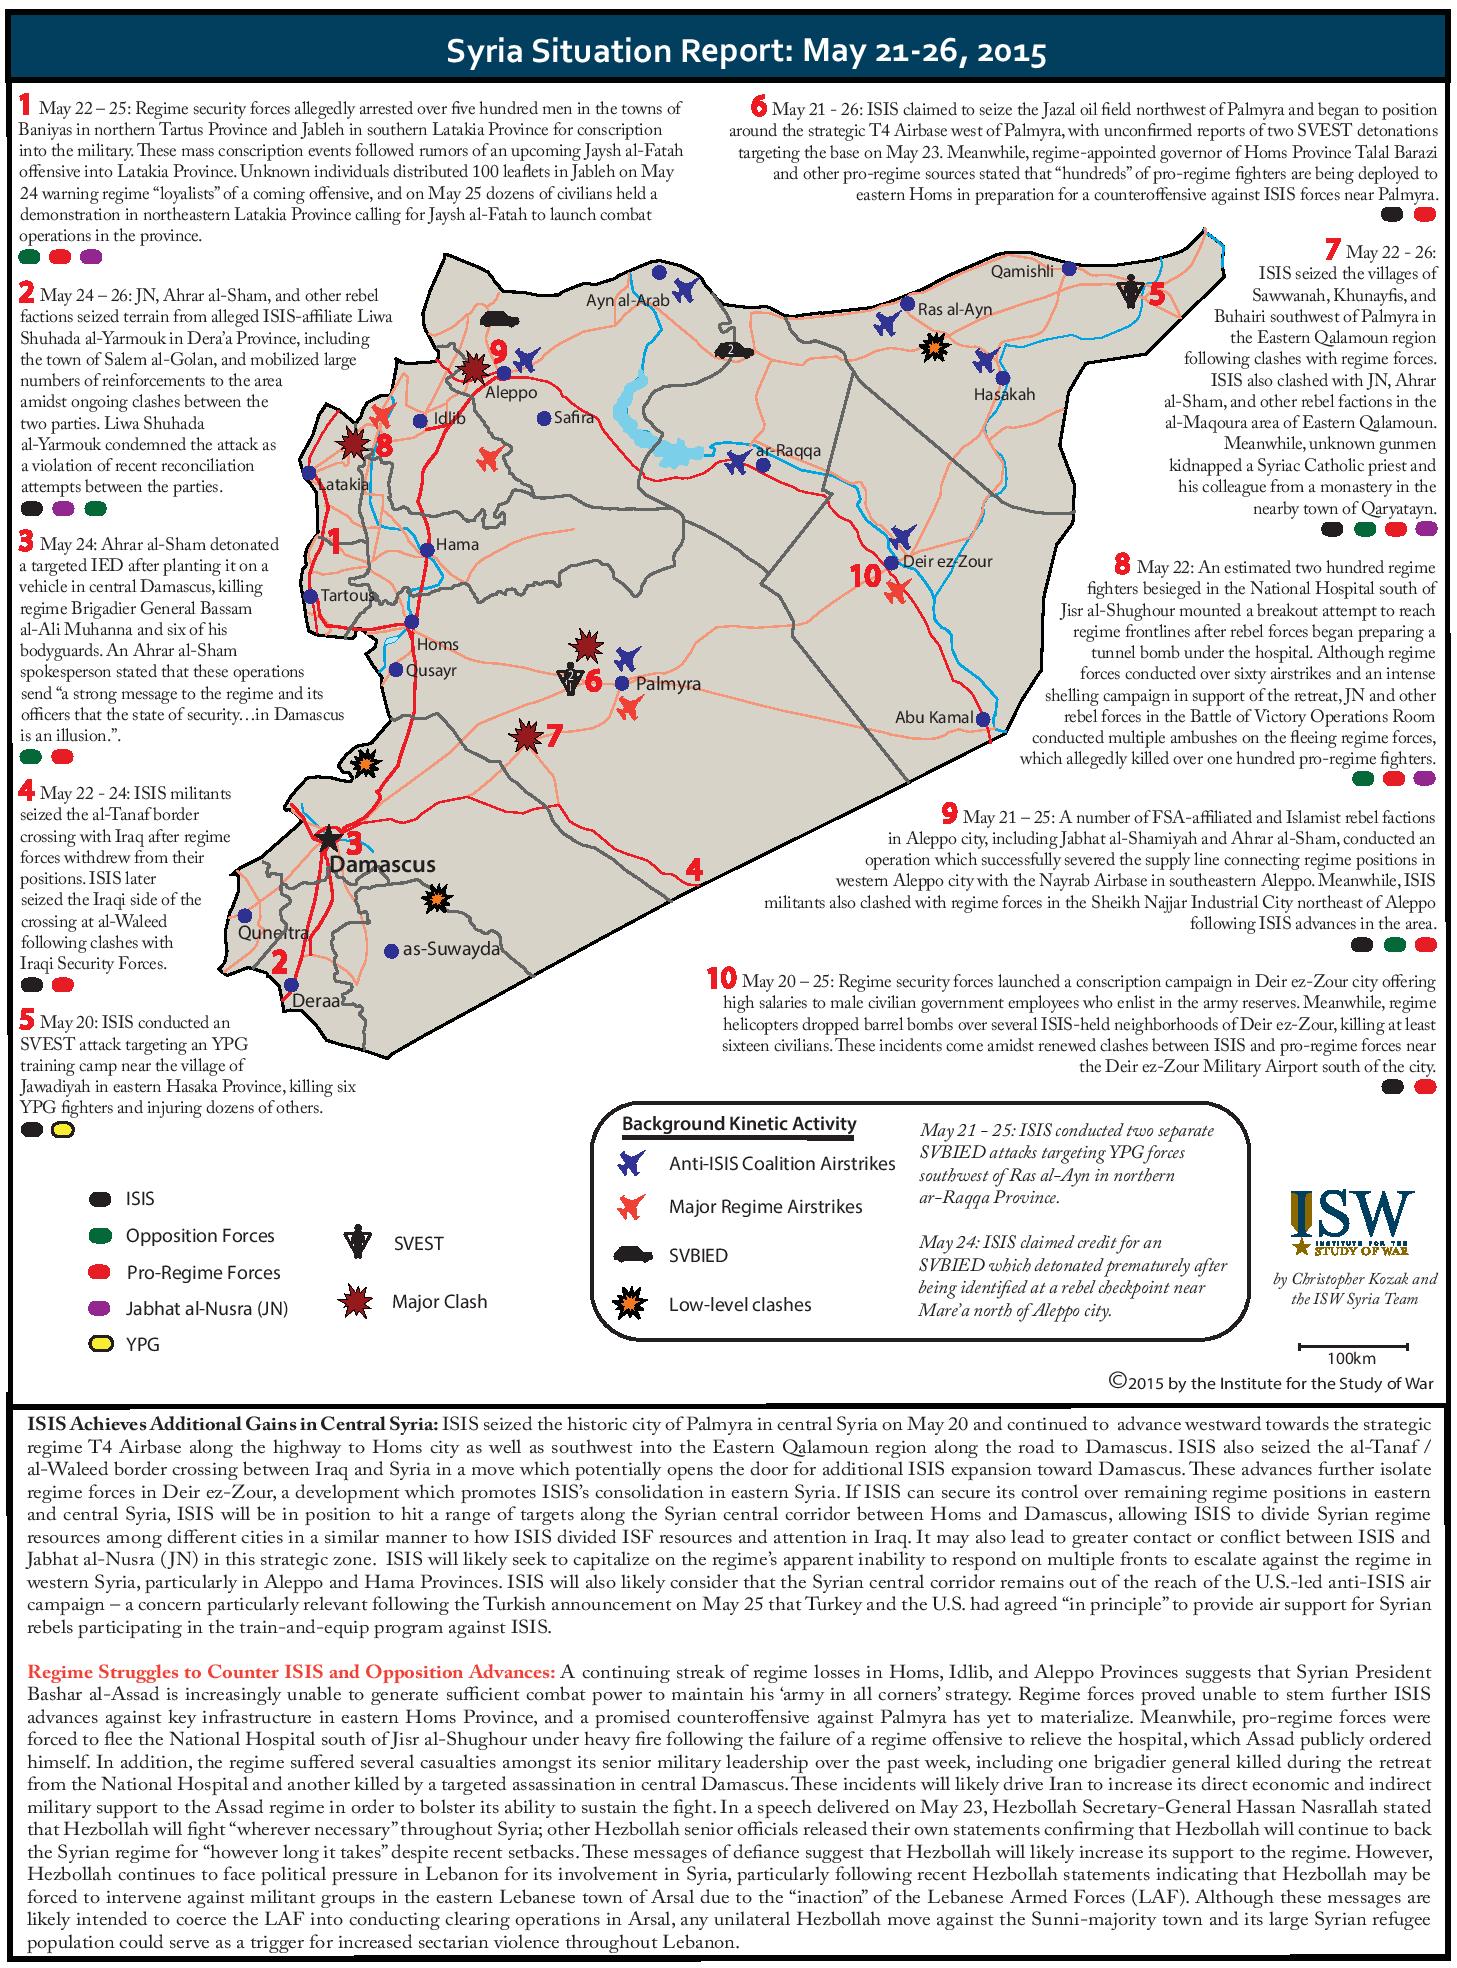 تقرير لمعهد الدراسات الامريكي للحرب يكشف الوضع في سورية خلال الفترة 21-26 ايار/ 2015